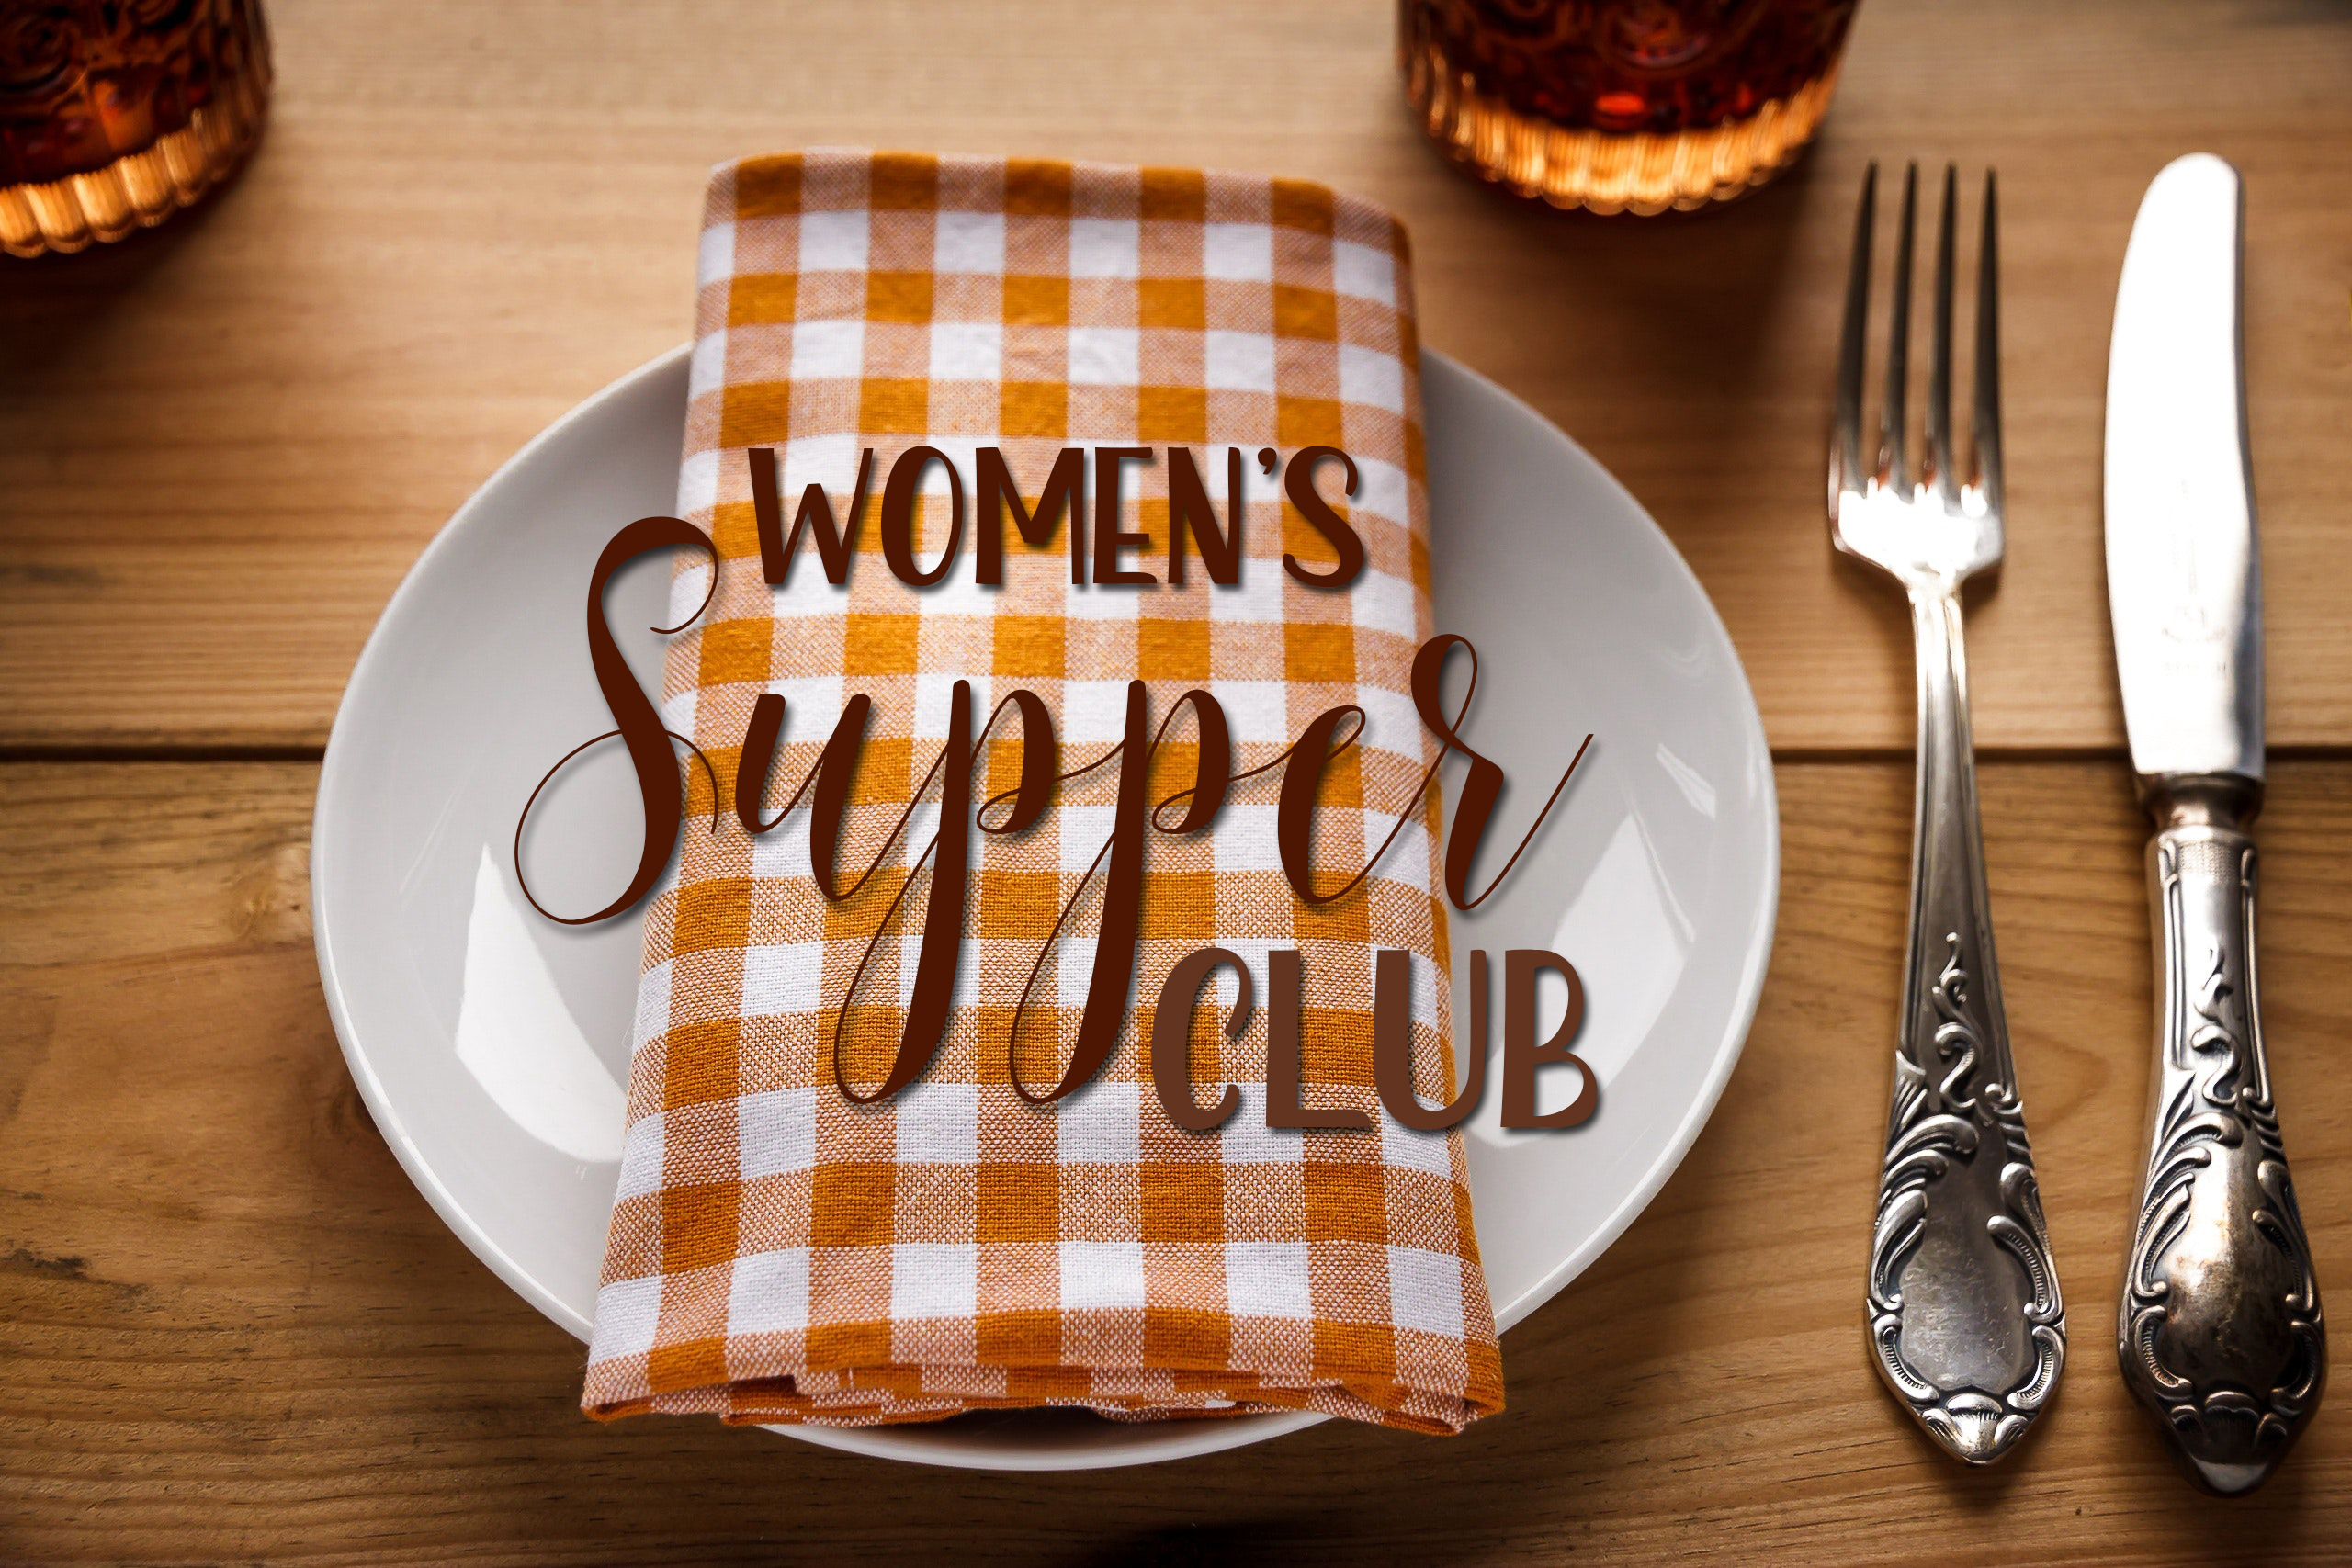 Supper Club March 15, 2019